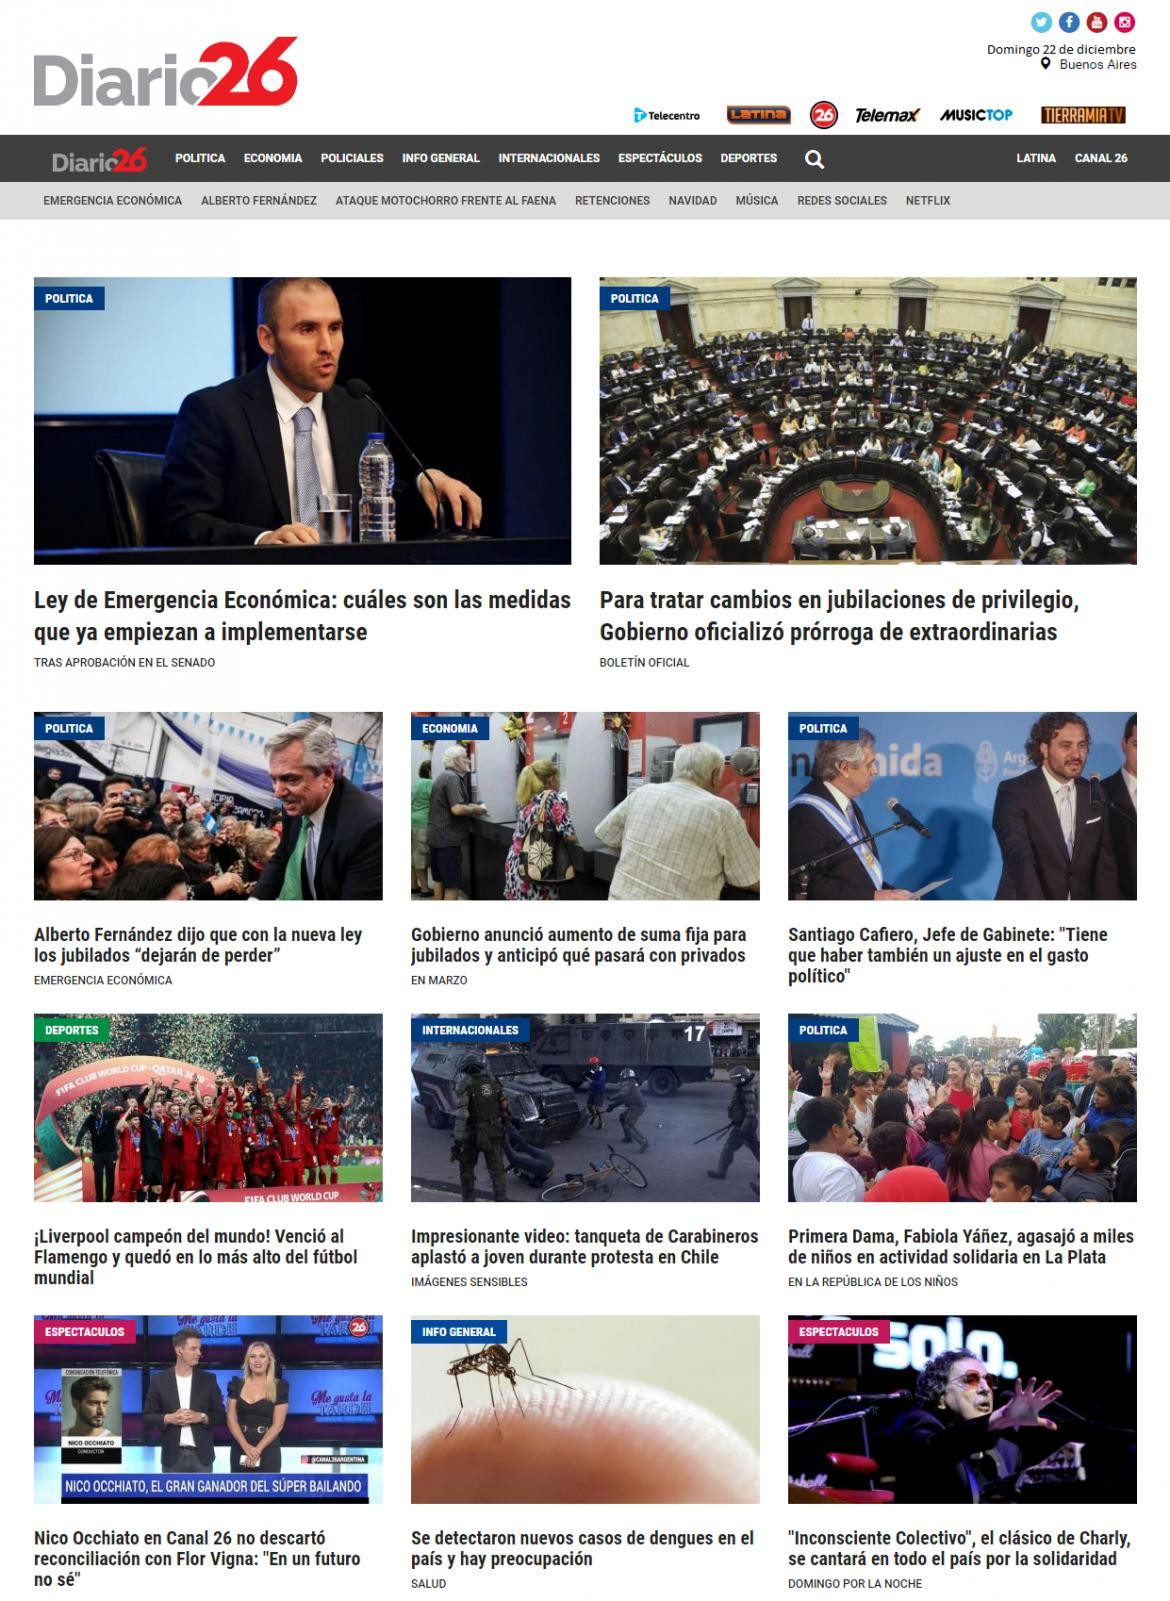 Tapa de diarios, Diario 26, domingo 22 de diciembre